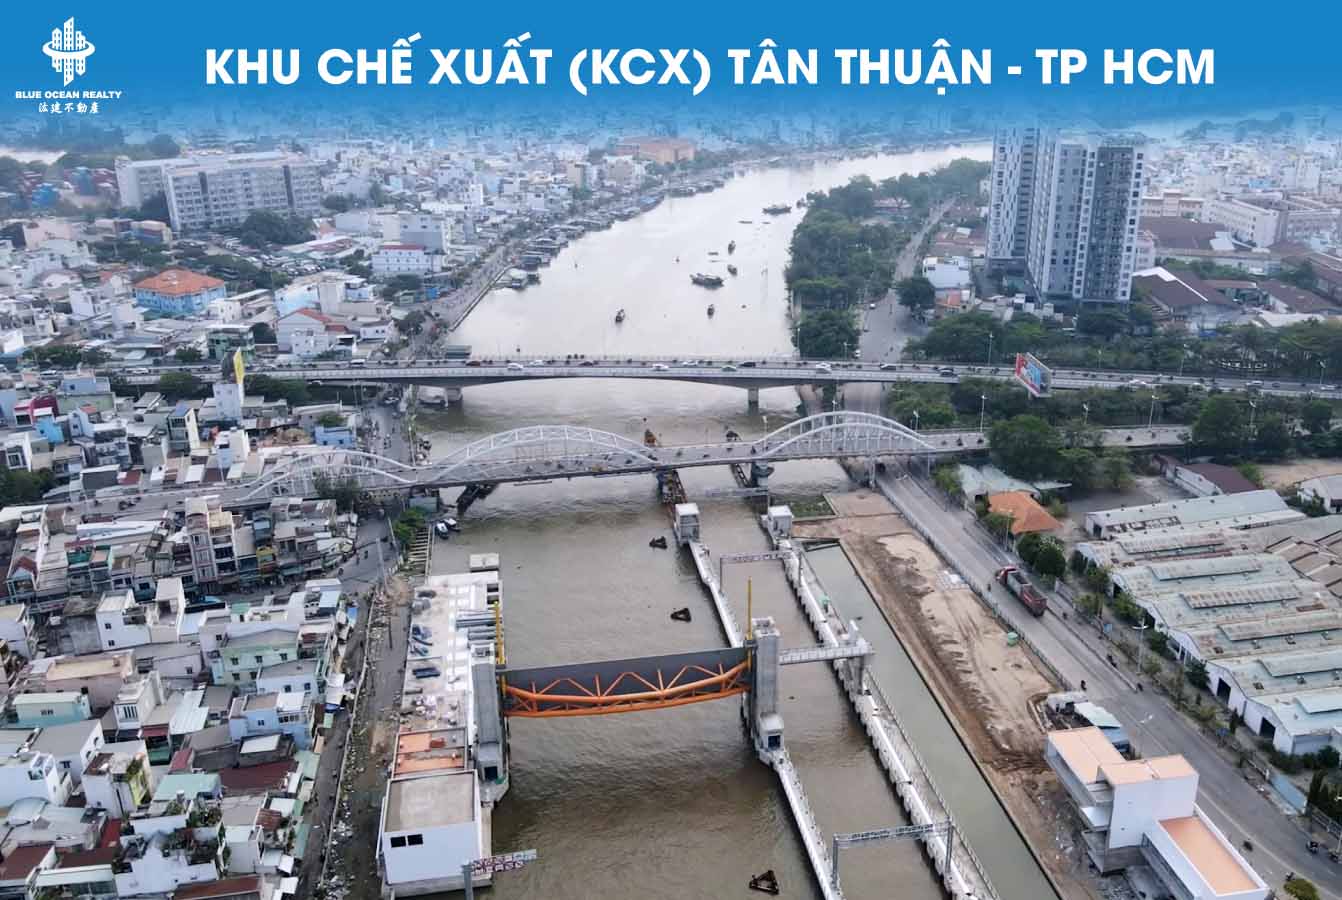 Khu chế xuất (KCX) Tân Thuận - TP HCM